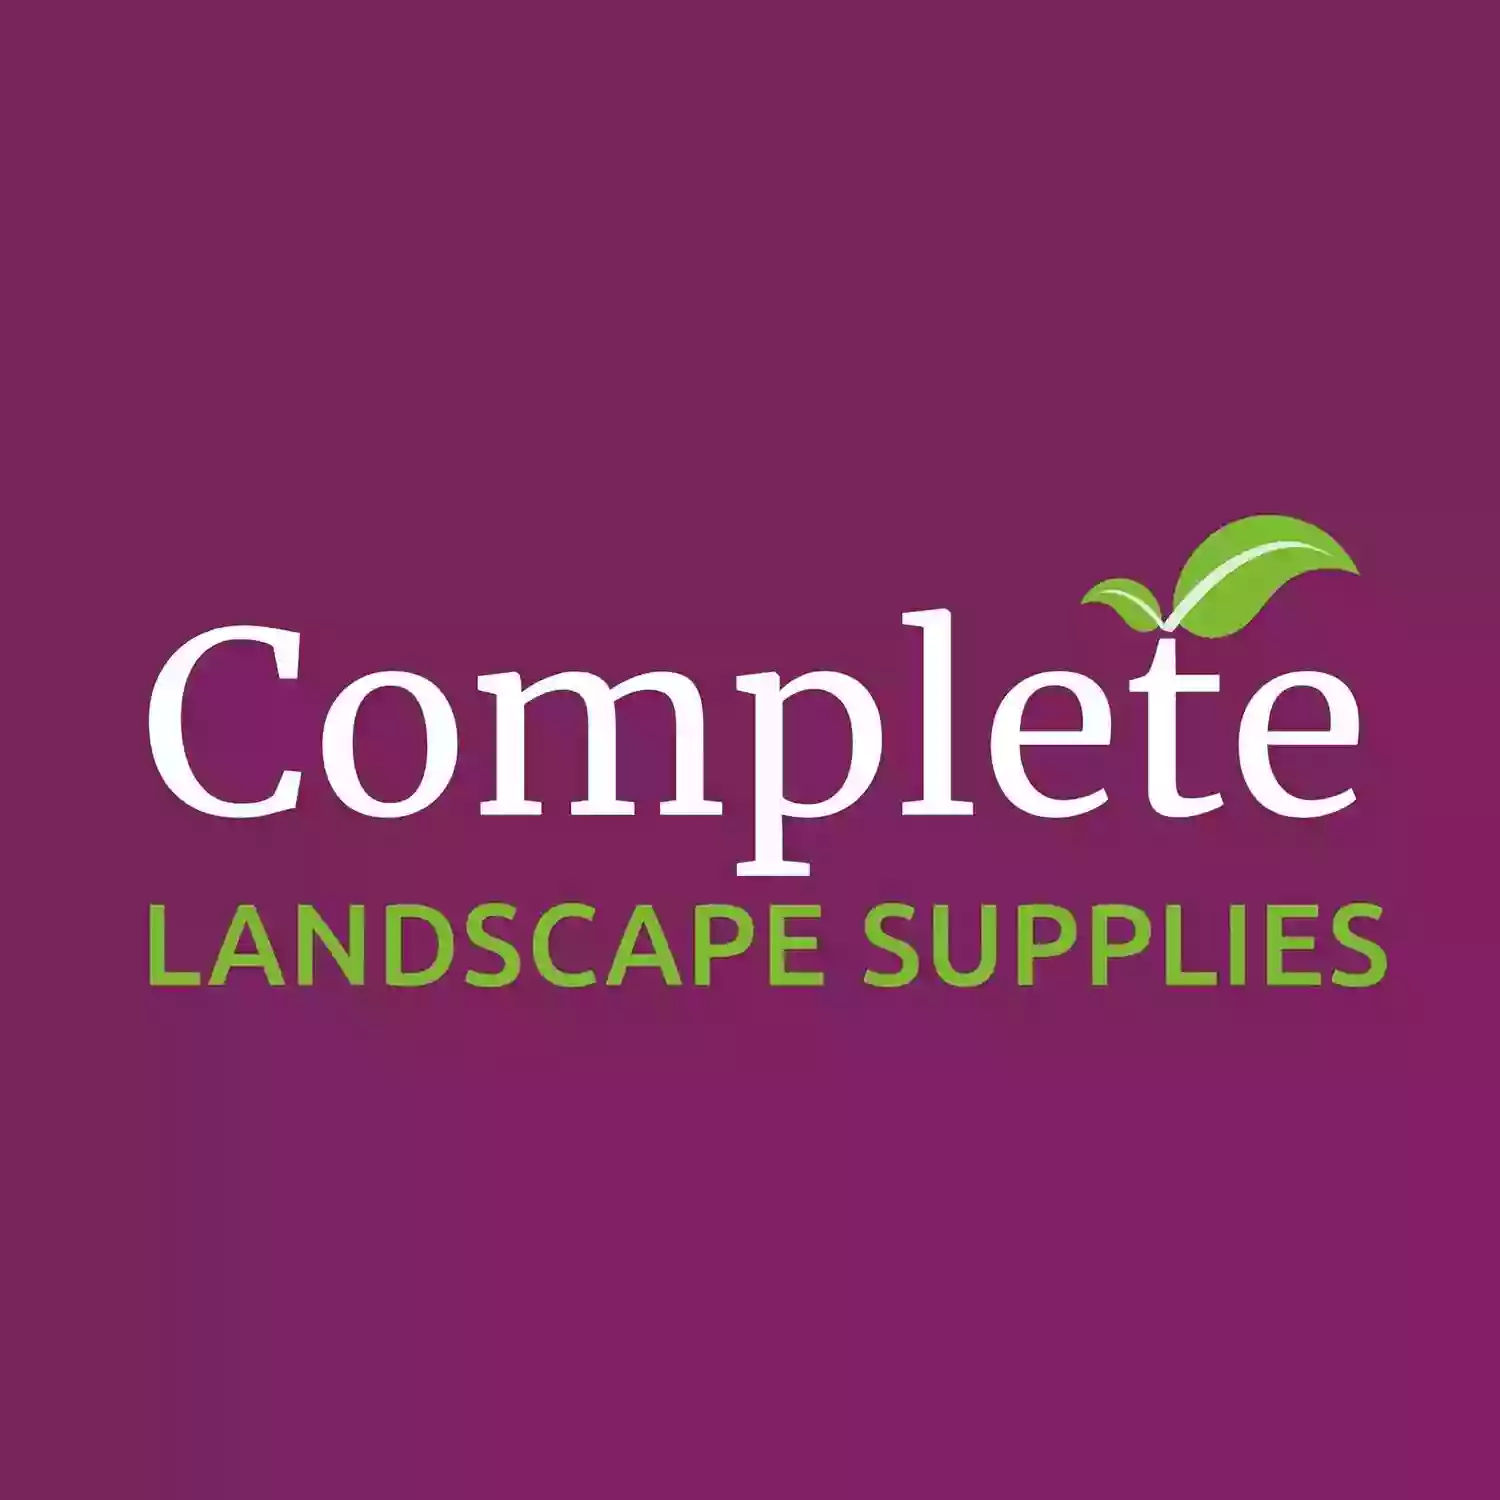 Complete Landscape Supplies